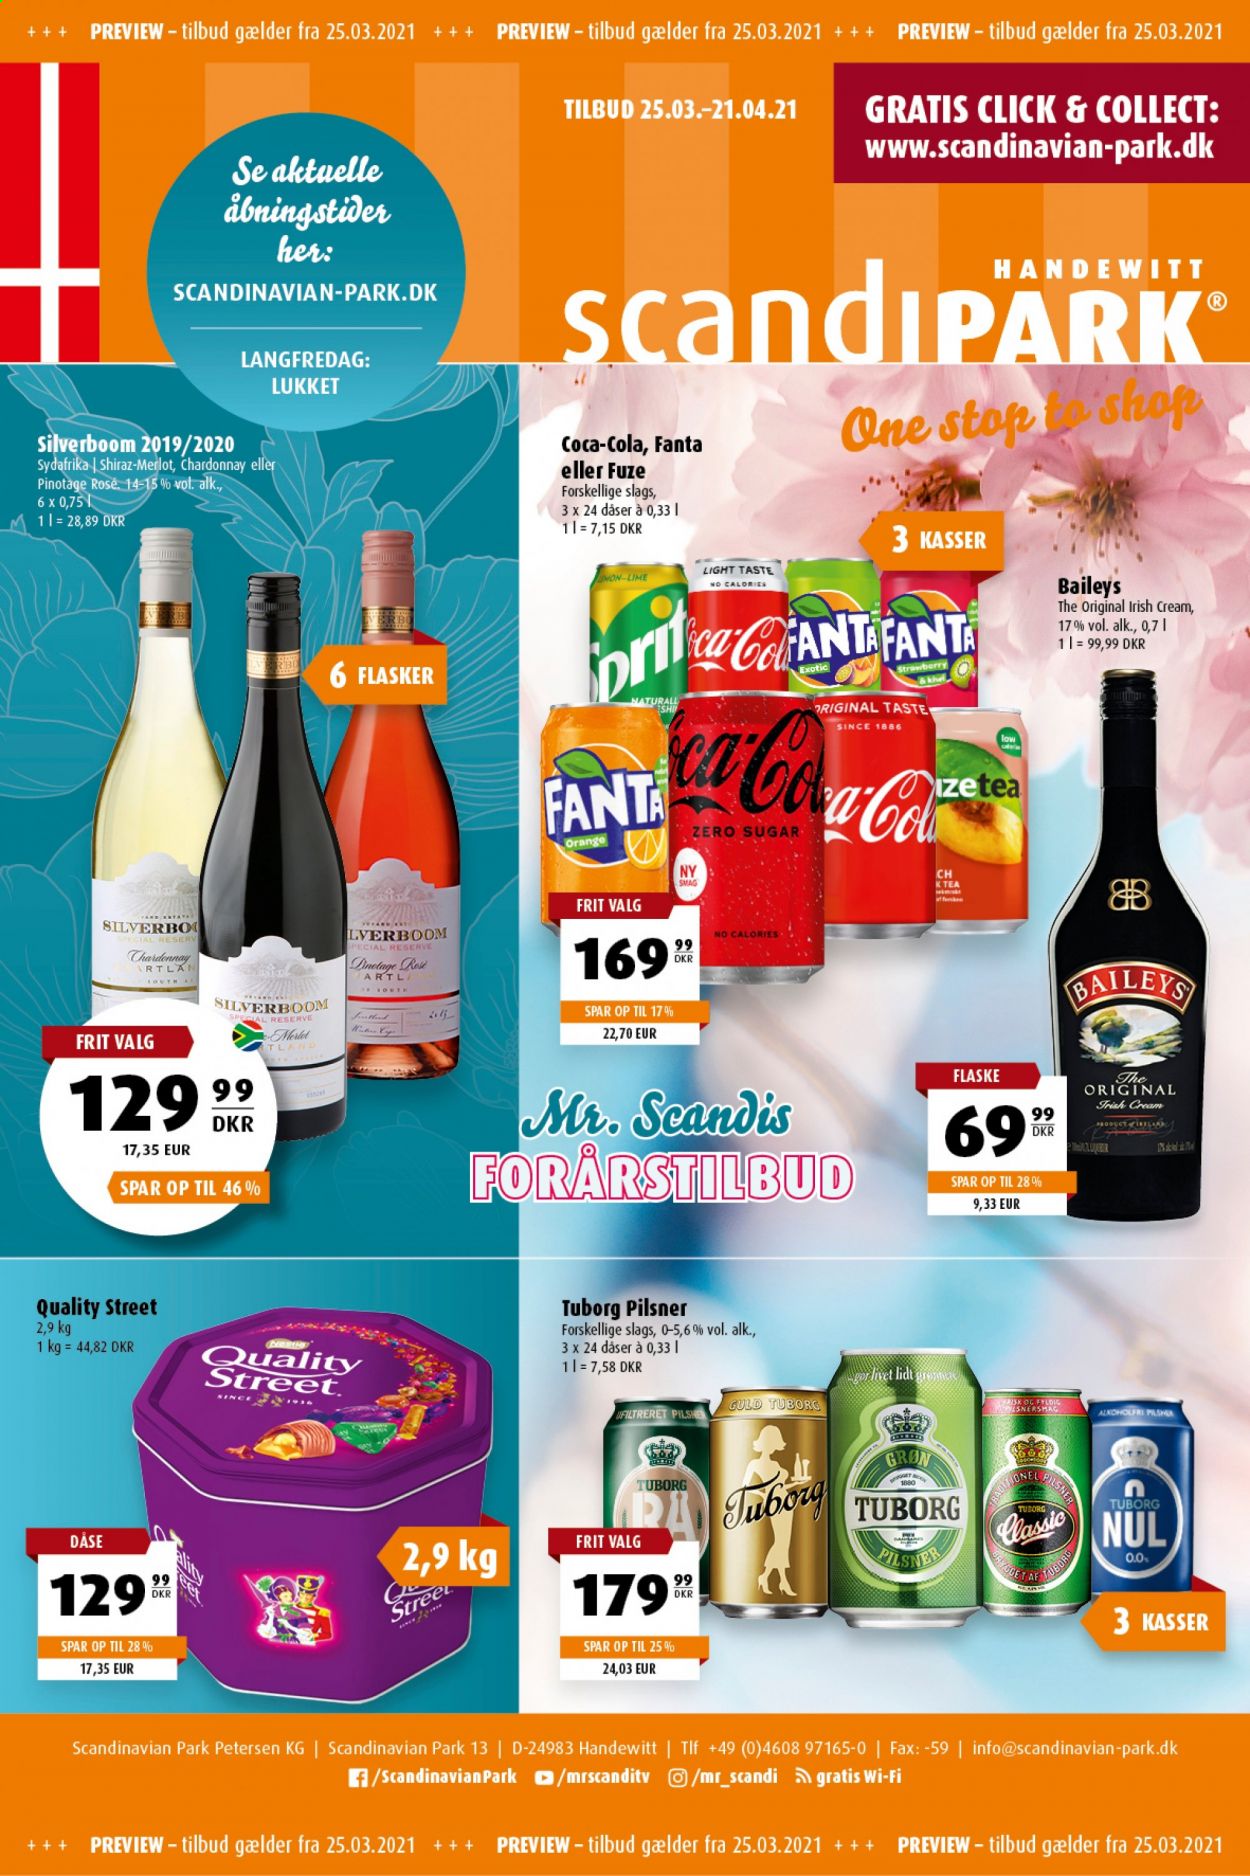 thumbnail - Scandinavian Park tilbud  - 25.3.2021 - 21.4.2021 - tilbudsprodukter - Lime, Tuborg, Coca-Cola, Fanta, Chardonnay, Merlot. Side 1.